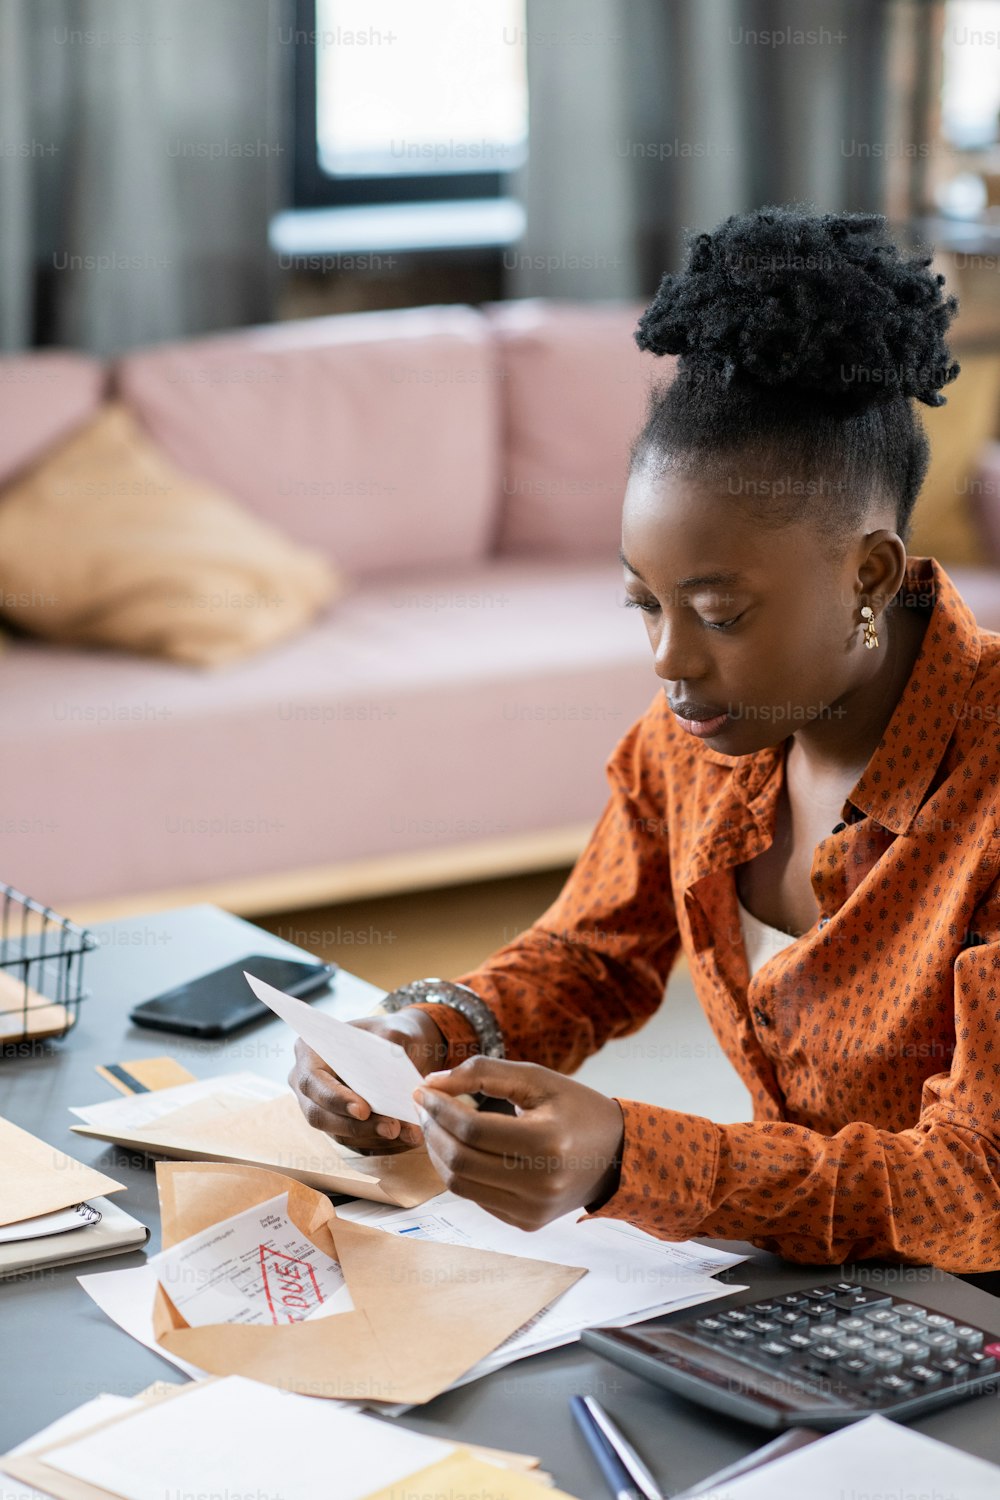 若いアフリカの女性は、書類と封印されていない封筒を持ってテーブルのそばに座りながら、財務書類や領収書を見ています